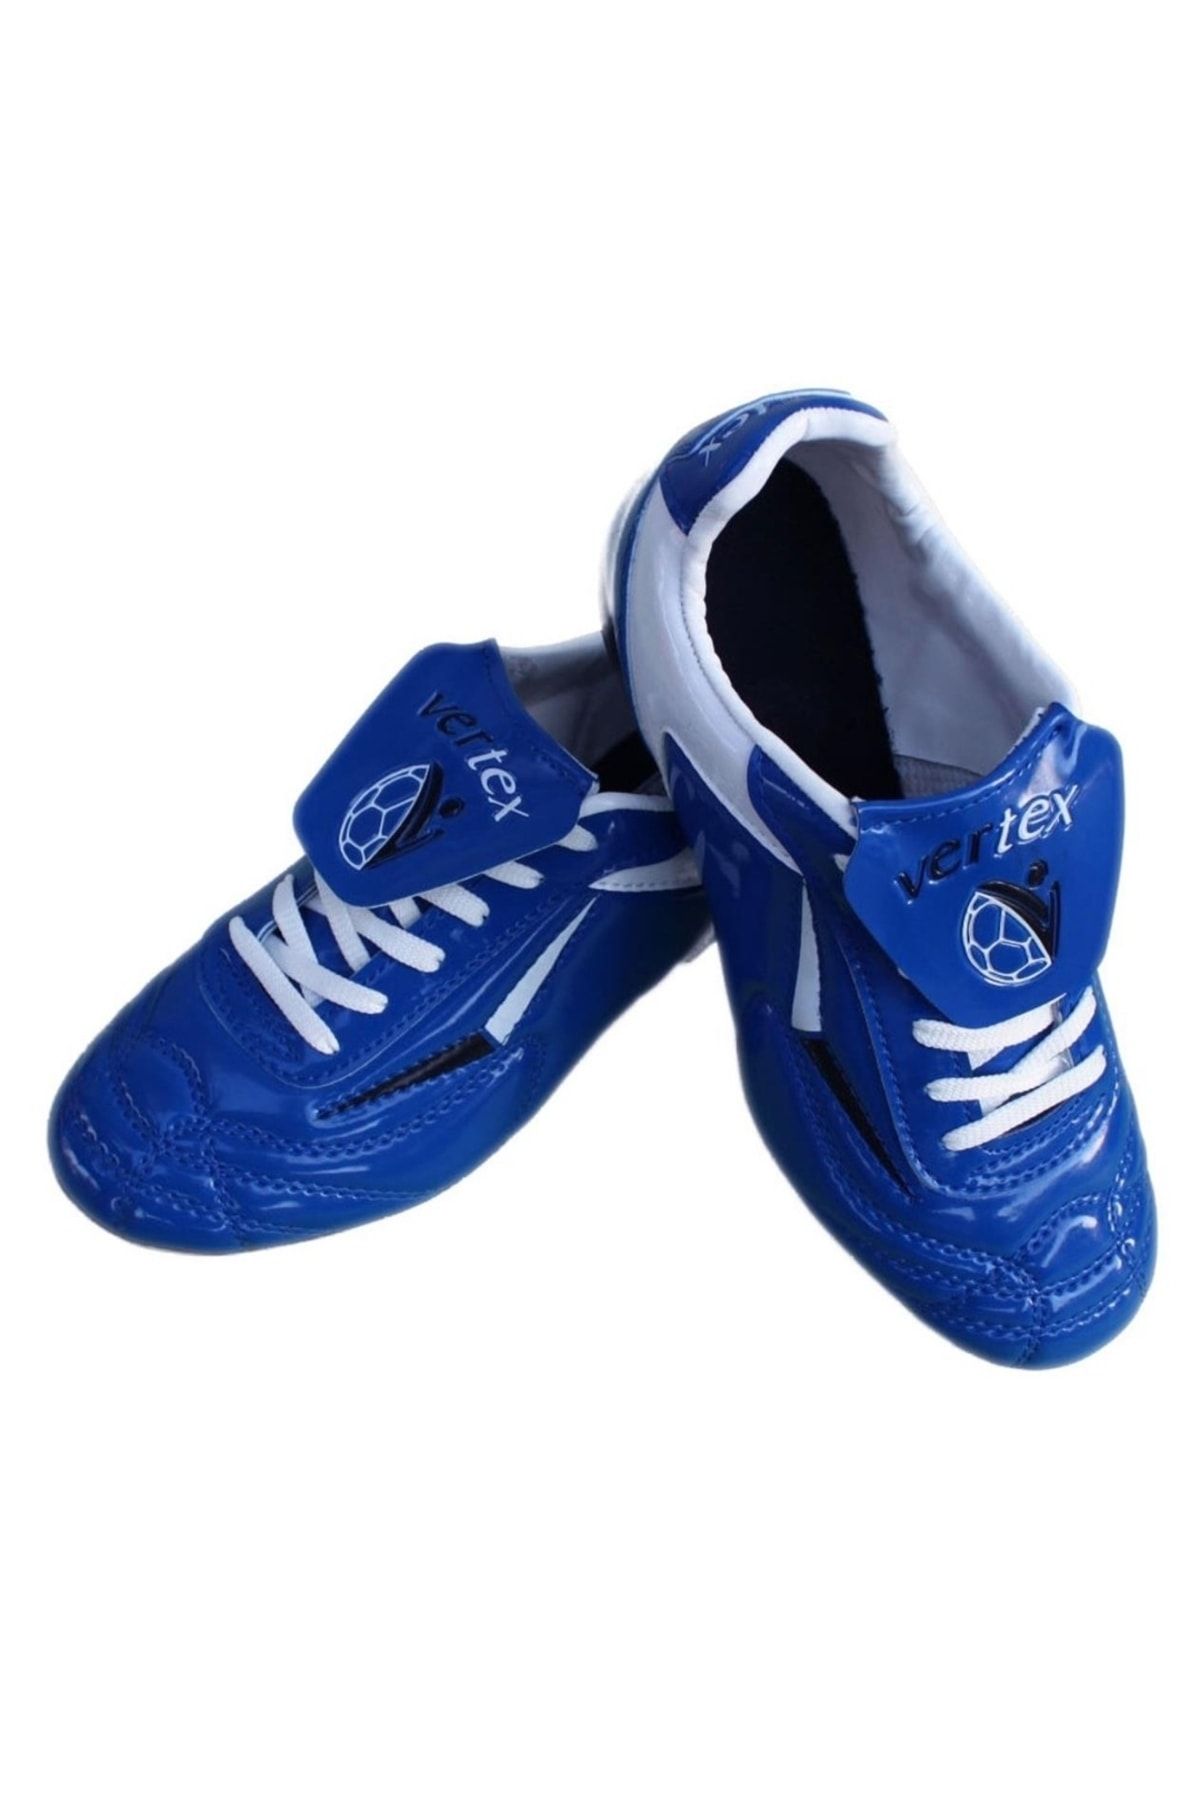 Vertex Mavi Beyaz Halı Saha Ayakkabısı